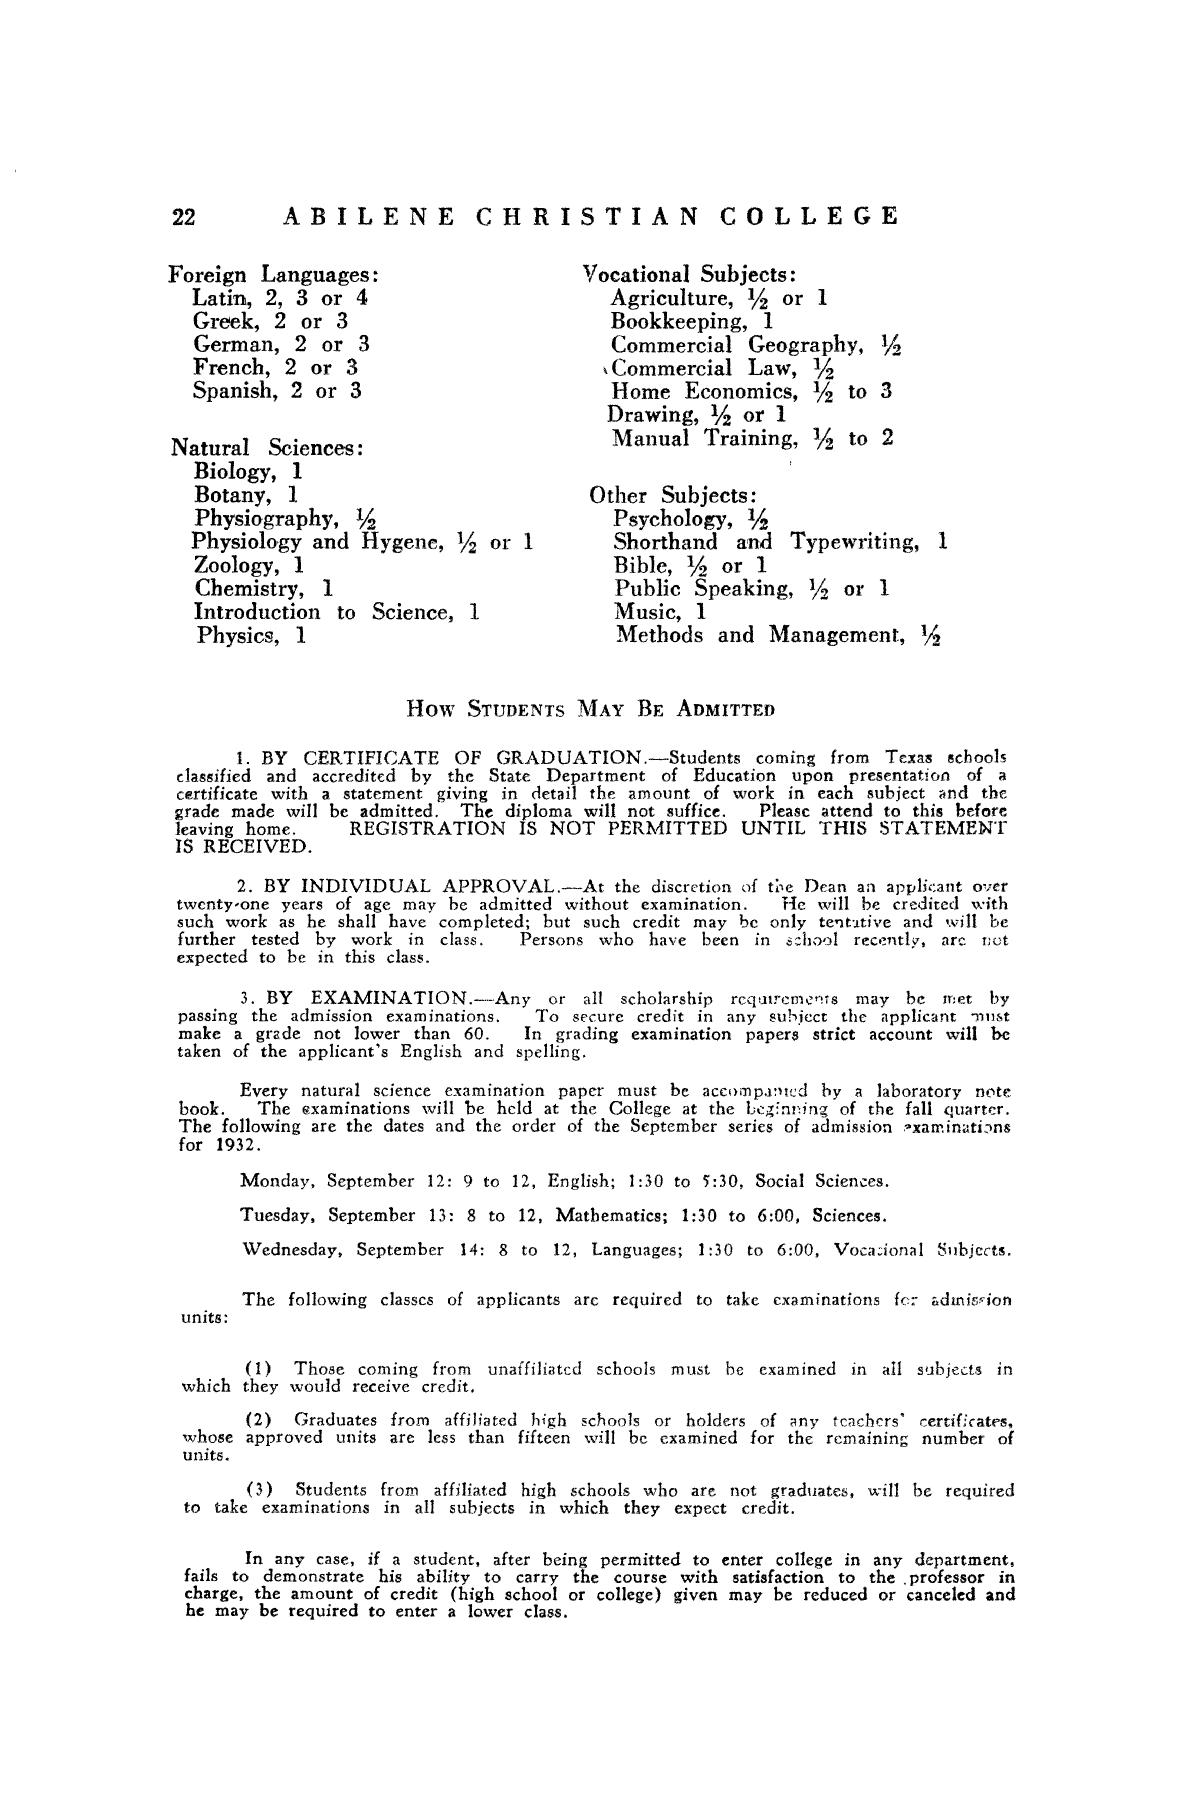 Catalog of Abilene Christian College, 1932-1933
                                                
                                                    22
                                                